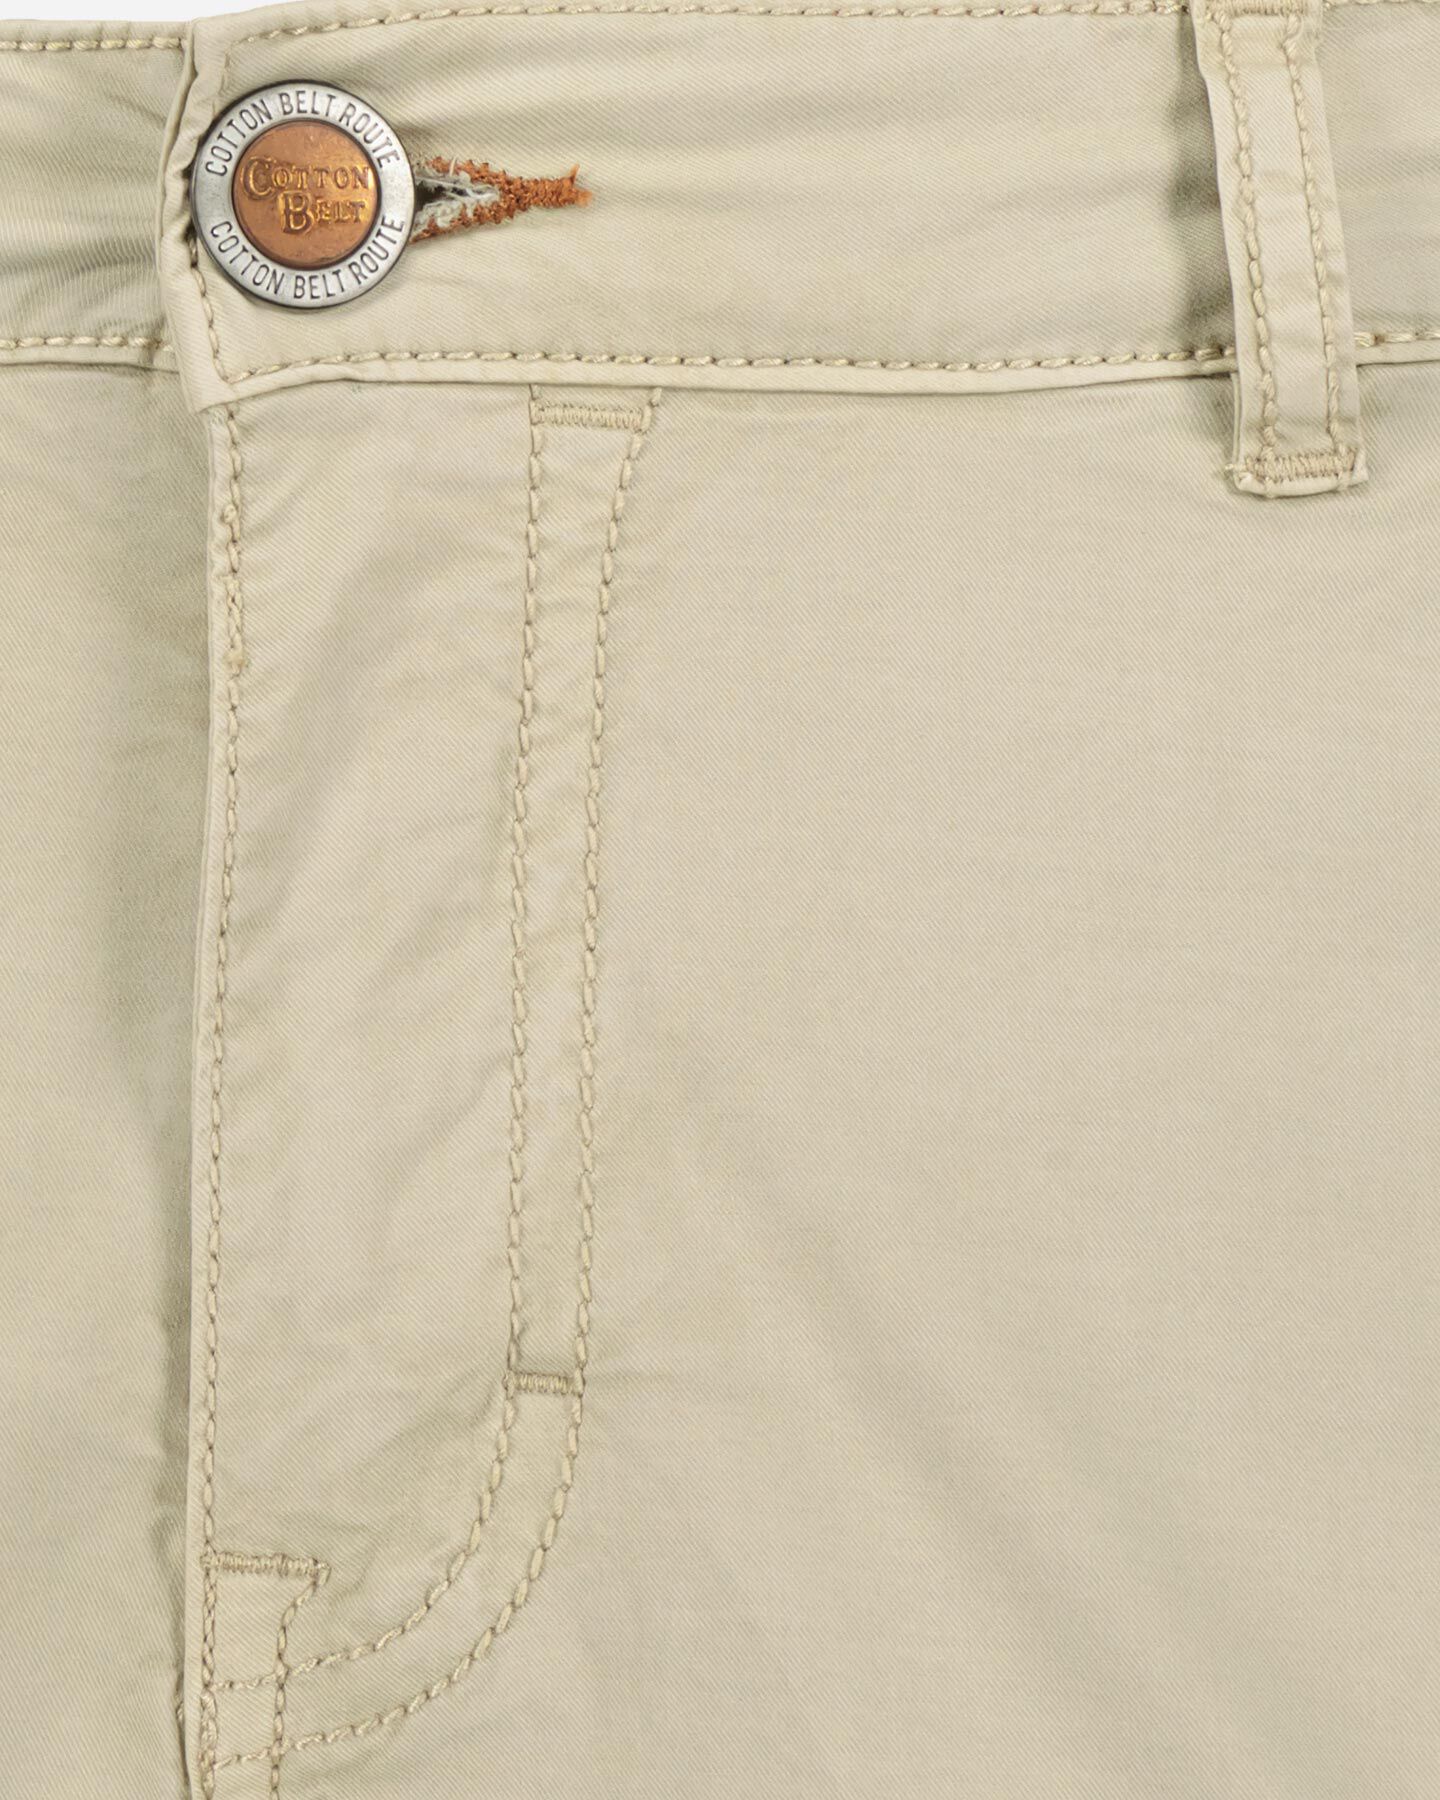  Pantalone COTTON BELT FARGO M S4121190|007|32 scatto 3